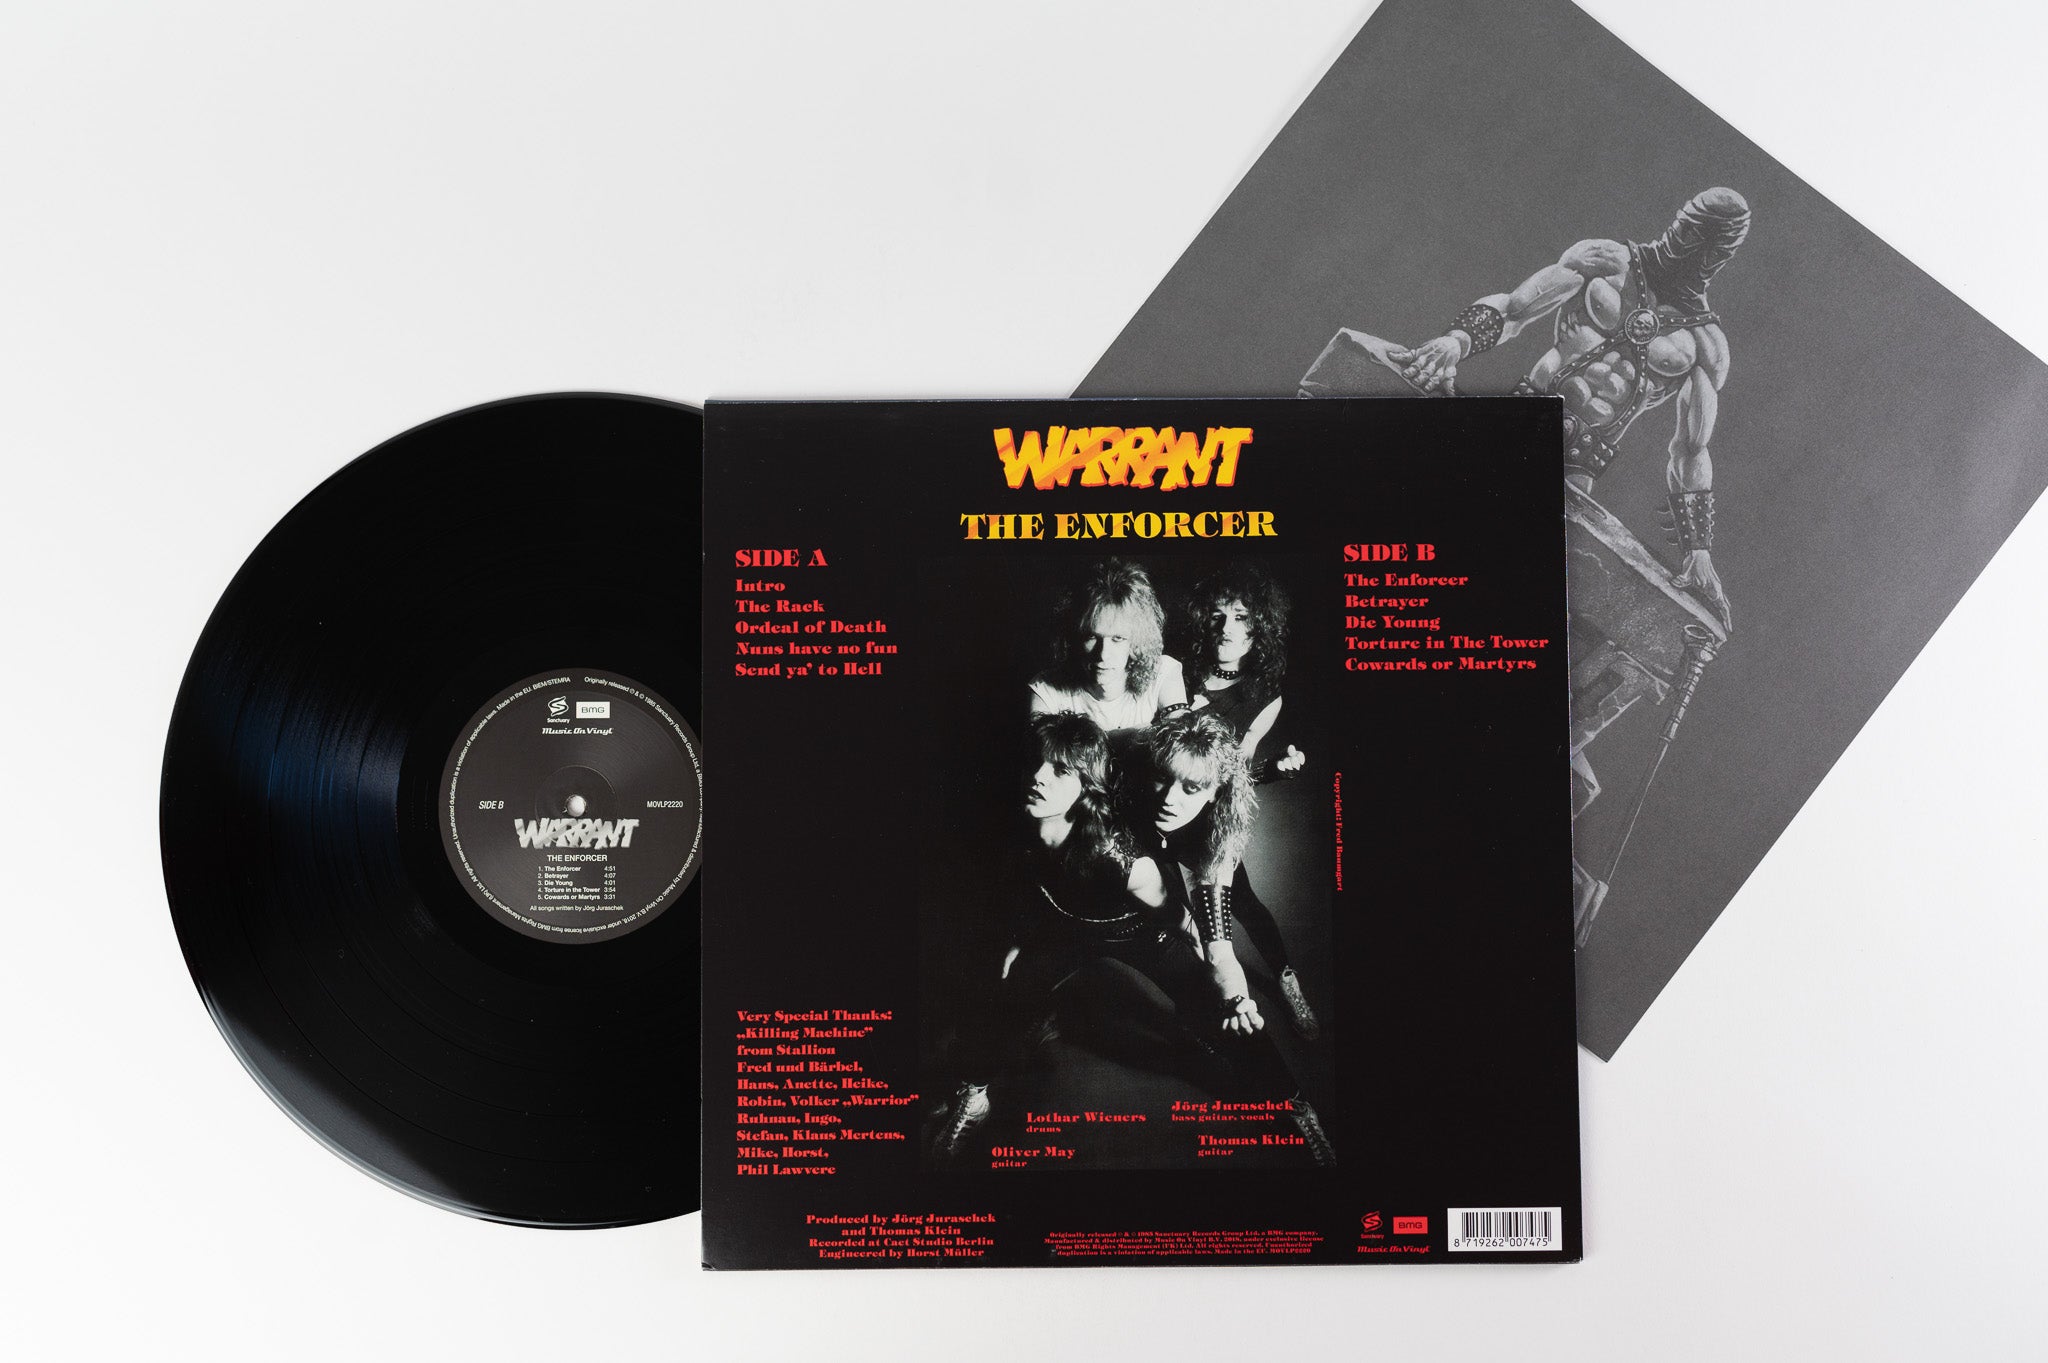 Warrant - The Enforcer Reissue on Music On Vinyl